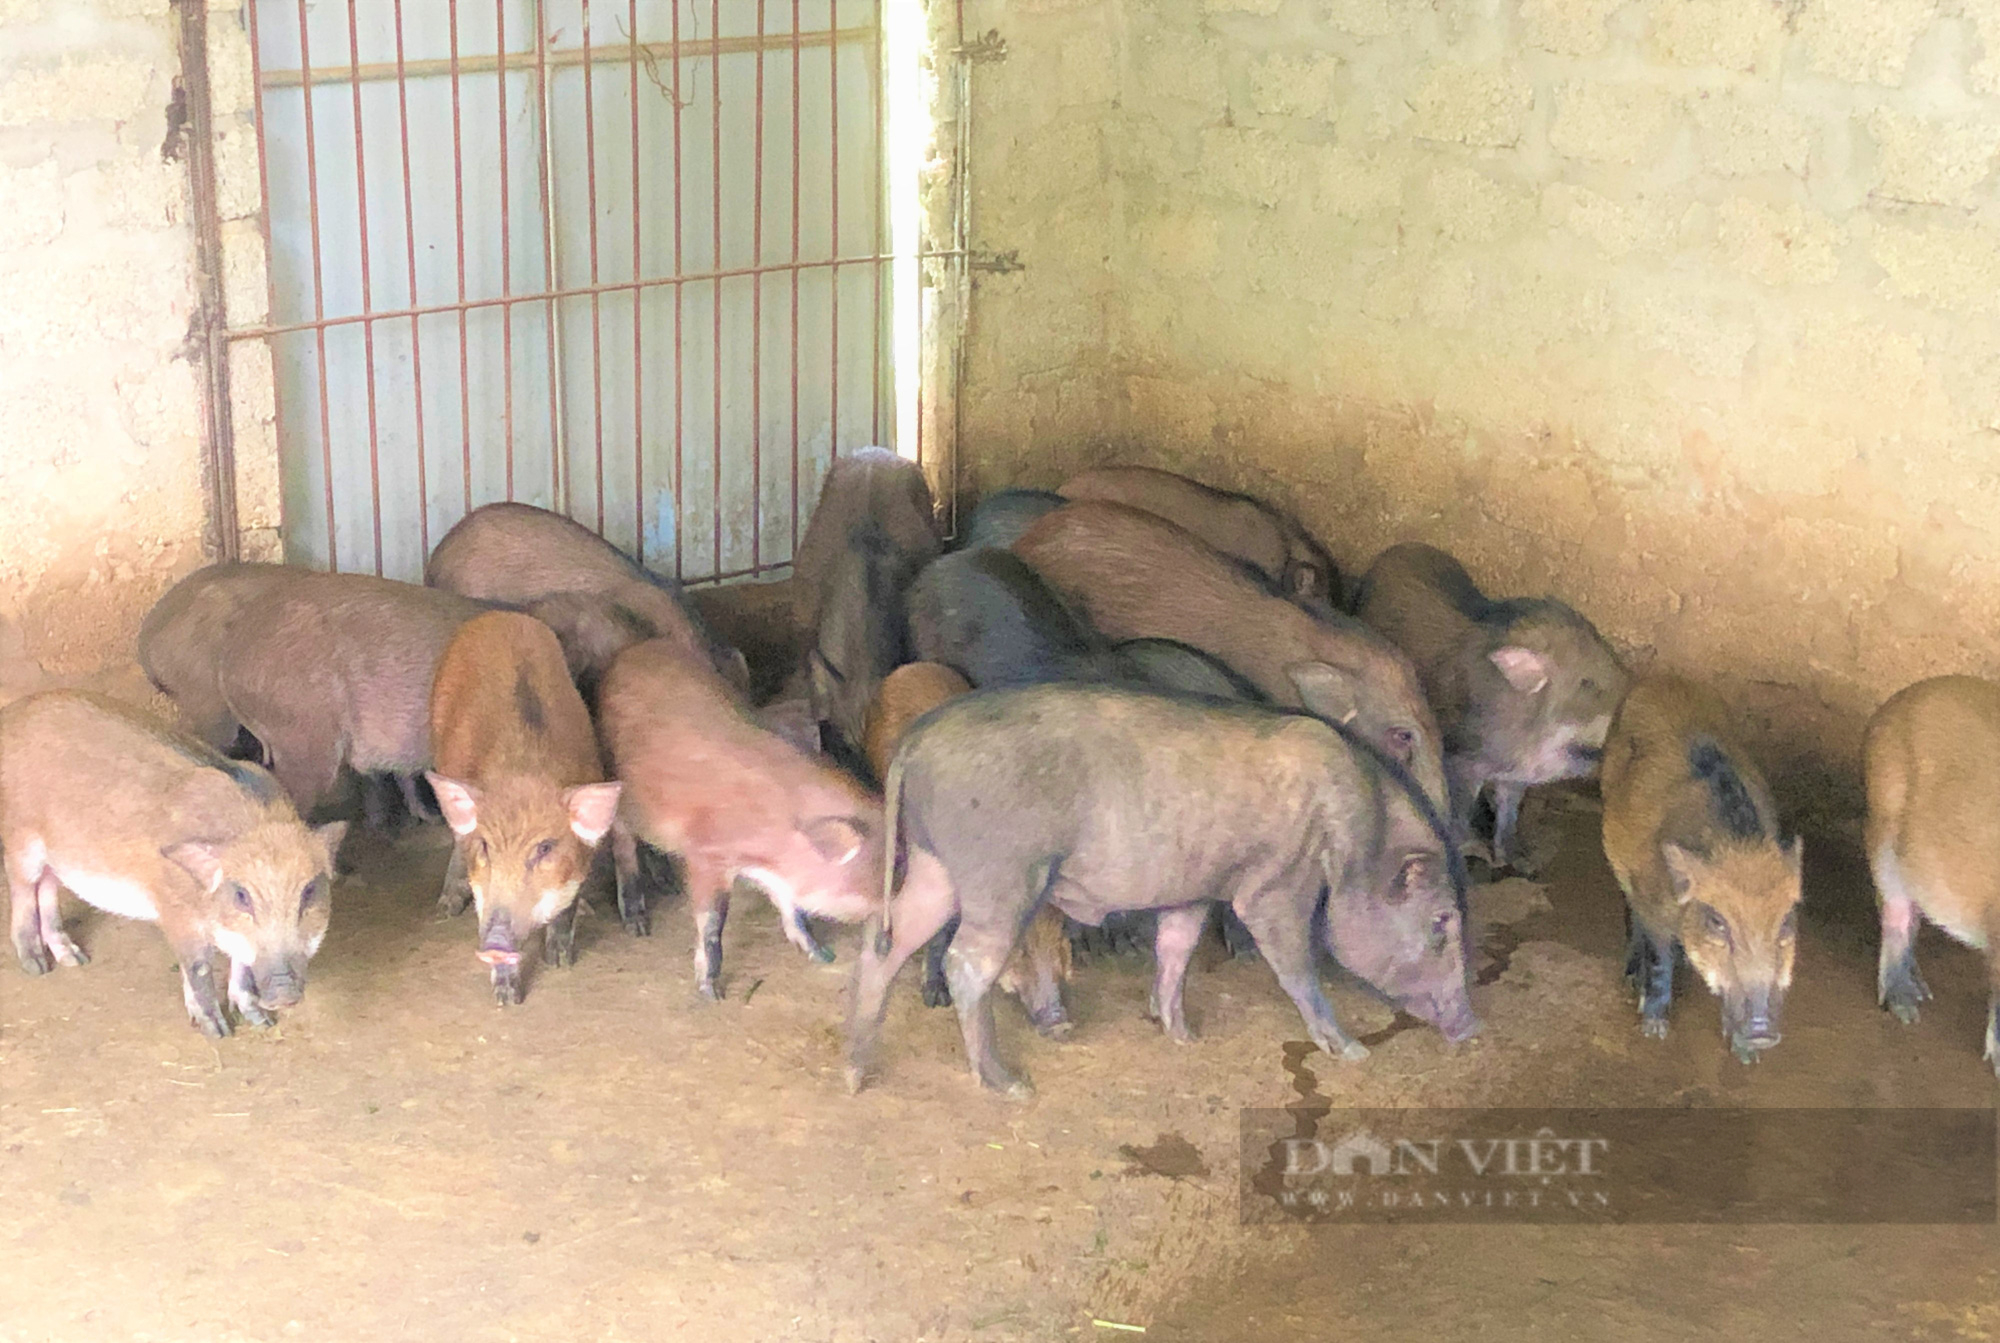 Nông dân Hà Tĩnh nuôi lợn rừng bằng thảo dược, miễn nhiễm dịch bệnh, bỏ túi hàng trăm triệu đồng mỗi năm - Ảnh 3.